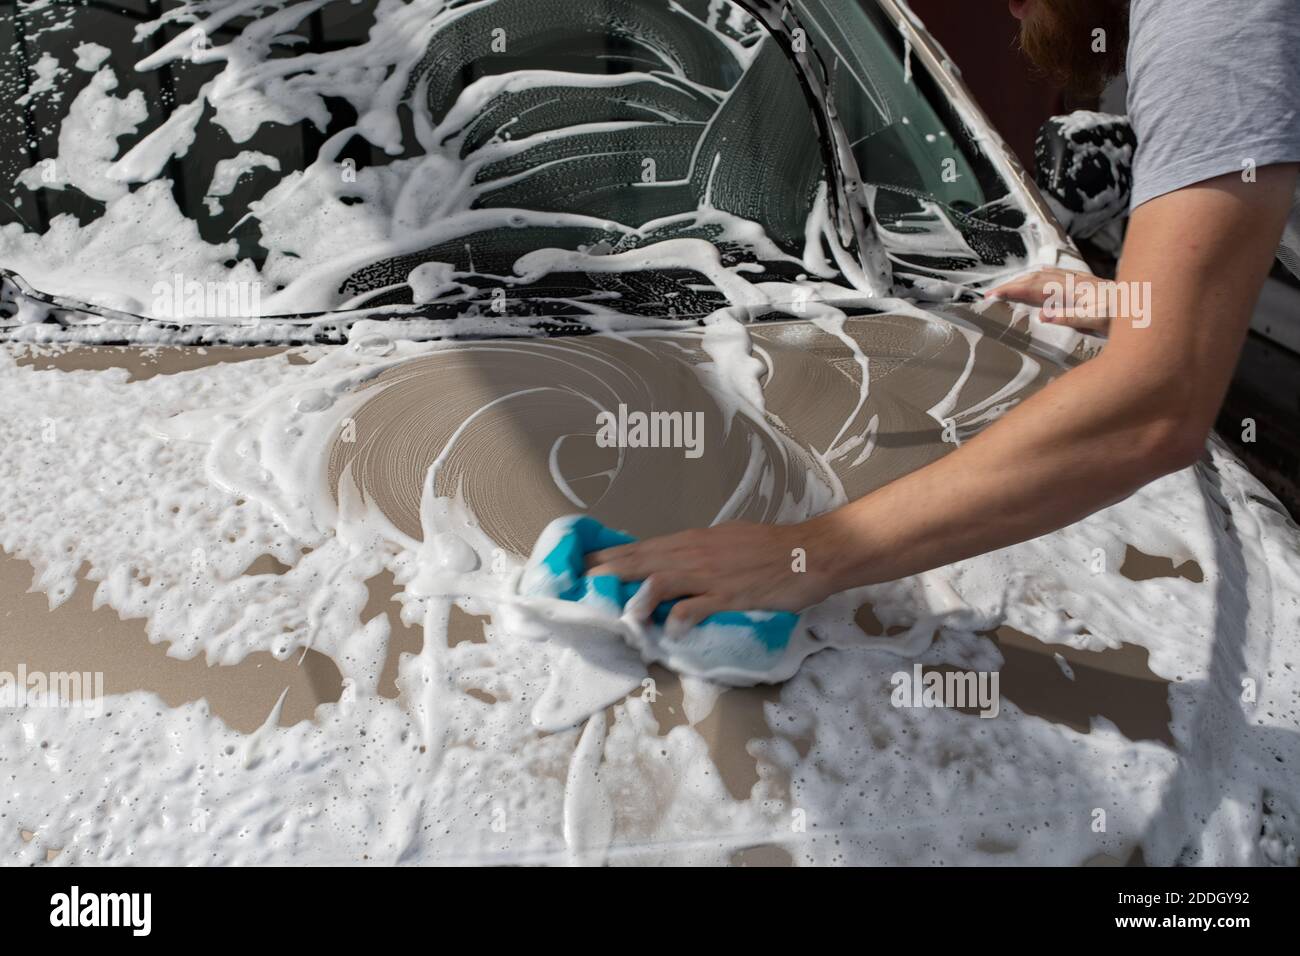 Mann Wasch Auto Haube mit Waschlappen und Shampoo, Auto bedeckt mit Schaum,  Auto waschen Service Stockfotografie - Alamy